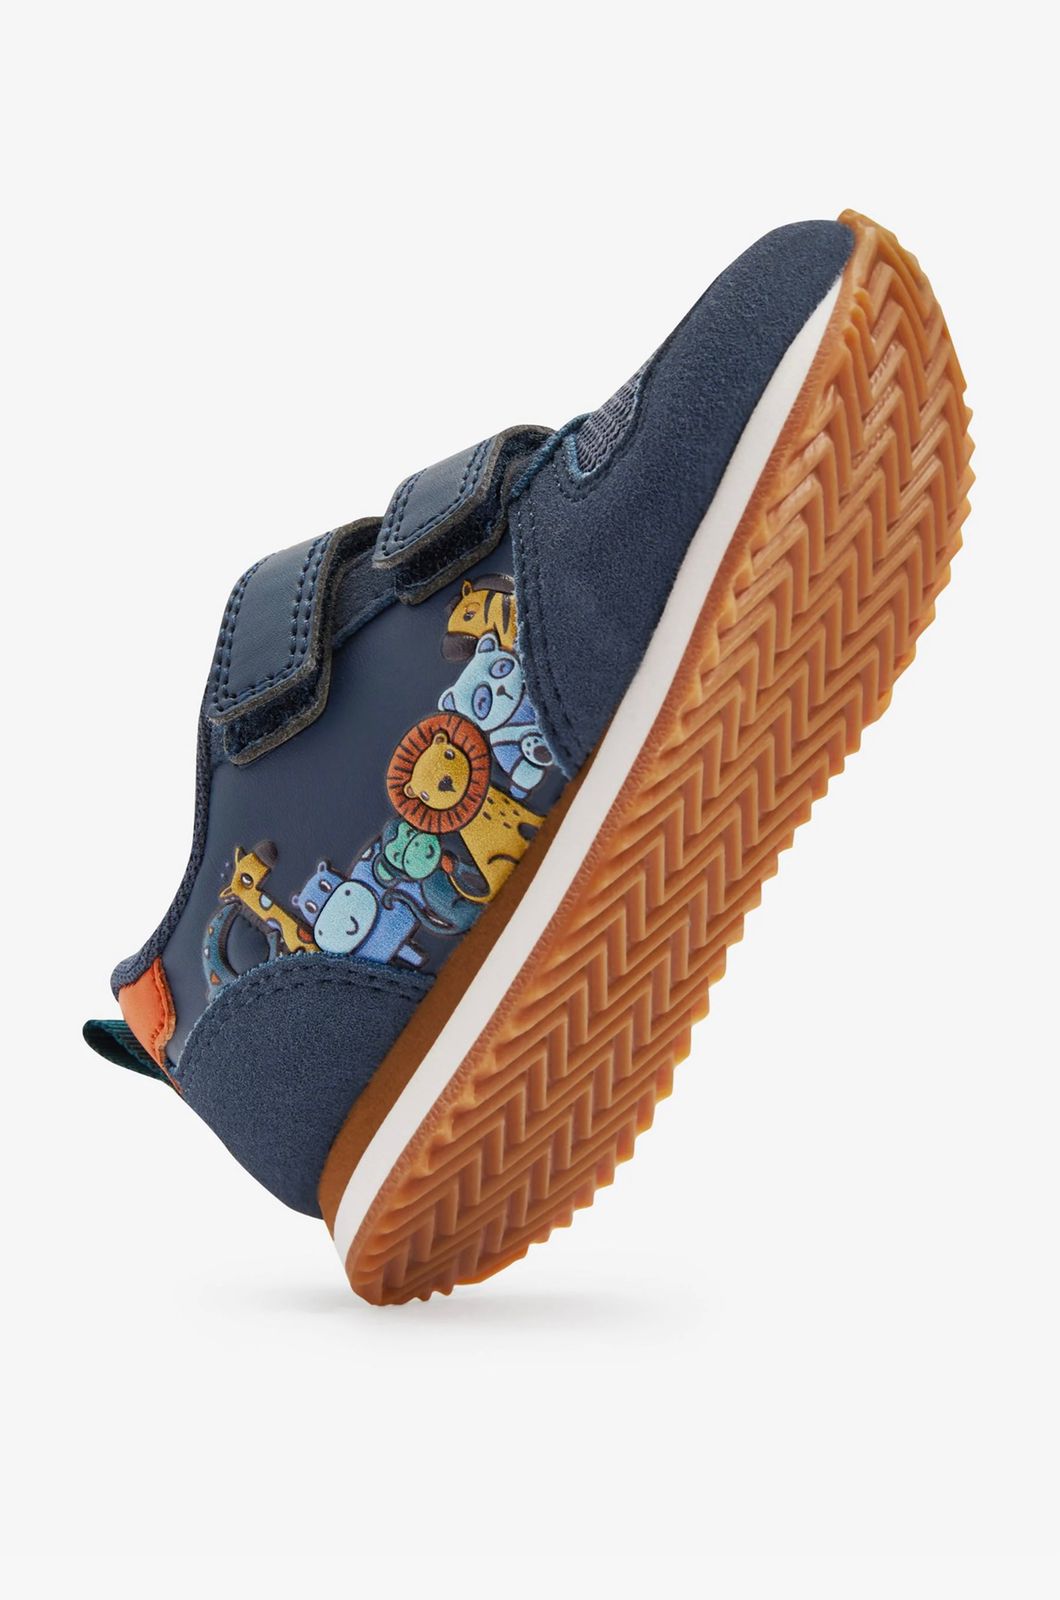 Next Safari Themed Shoes